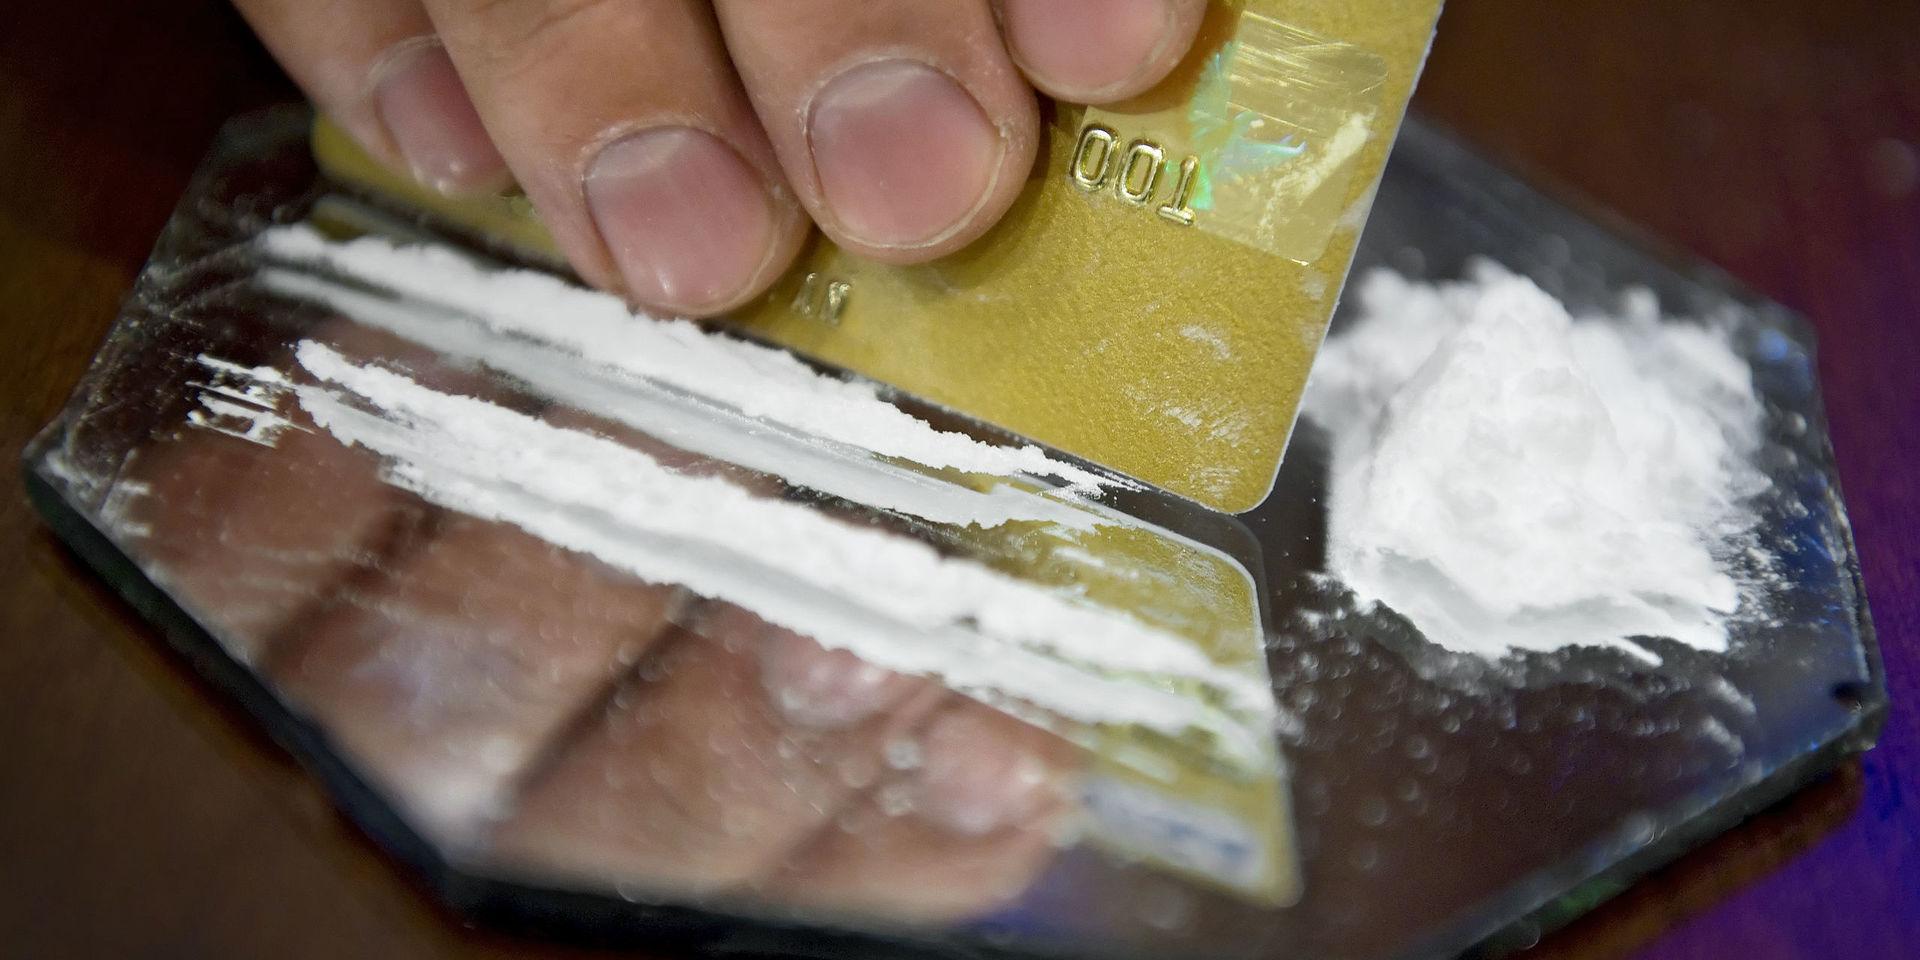 Kokainanvändningen har ökat i Piteåtrakten. Arkivbild.